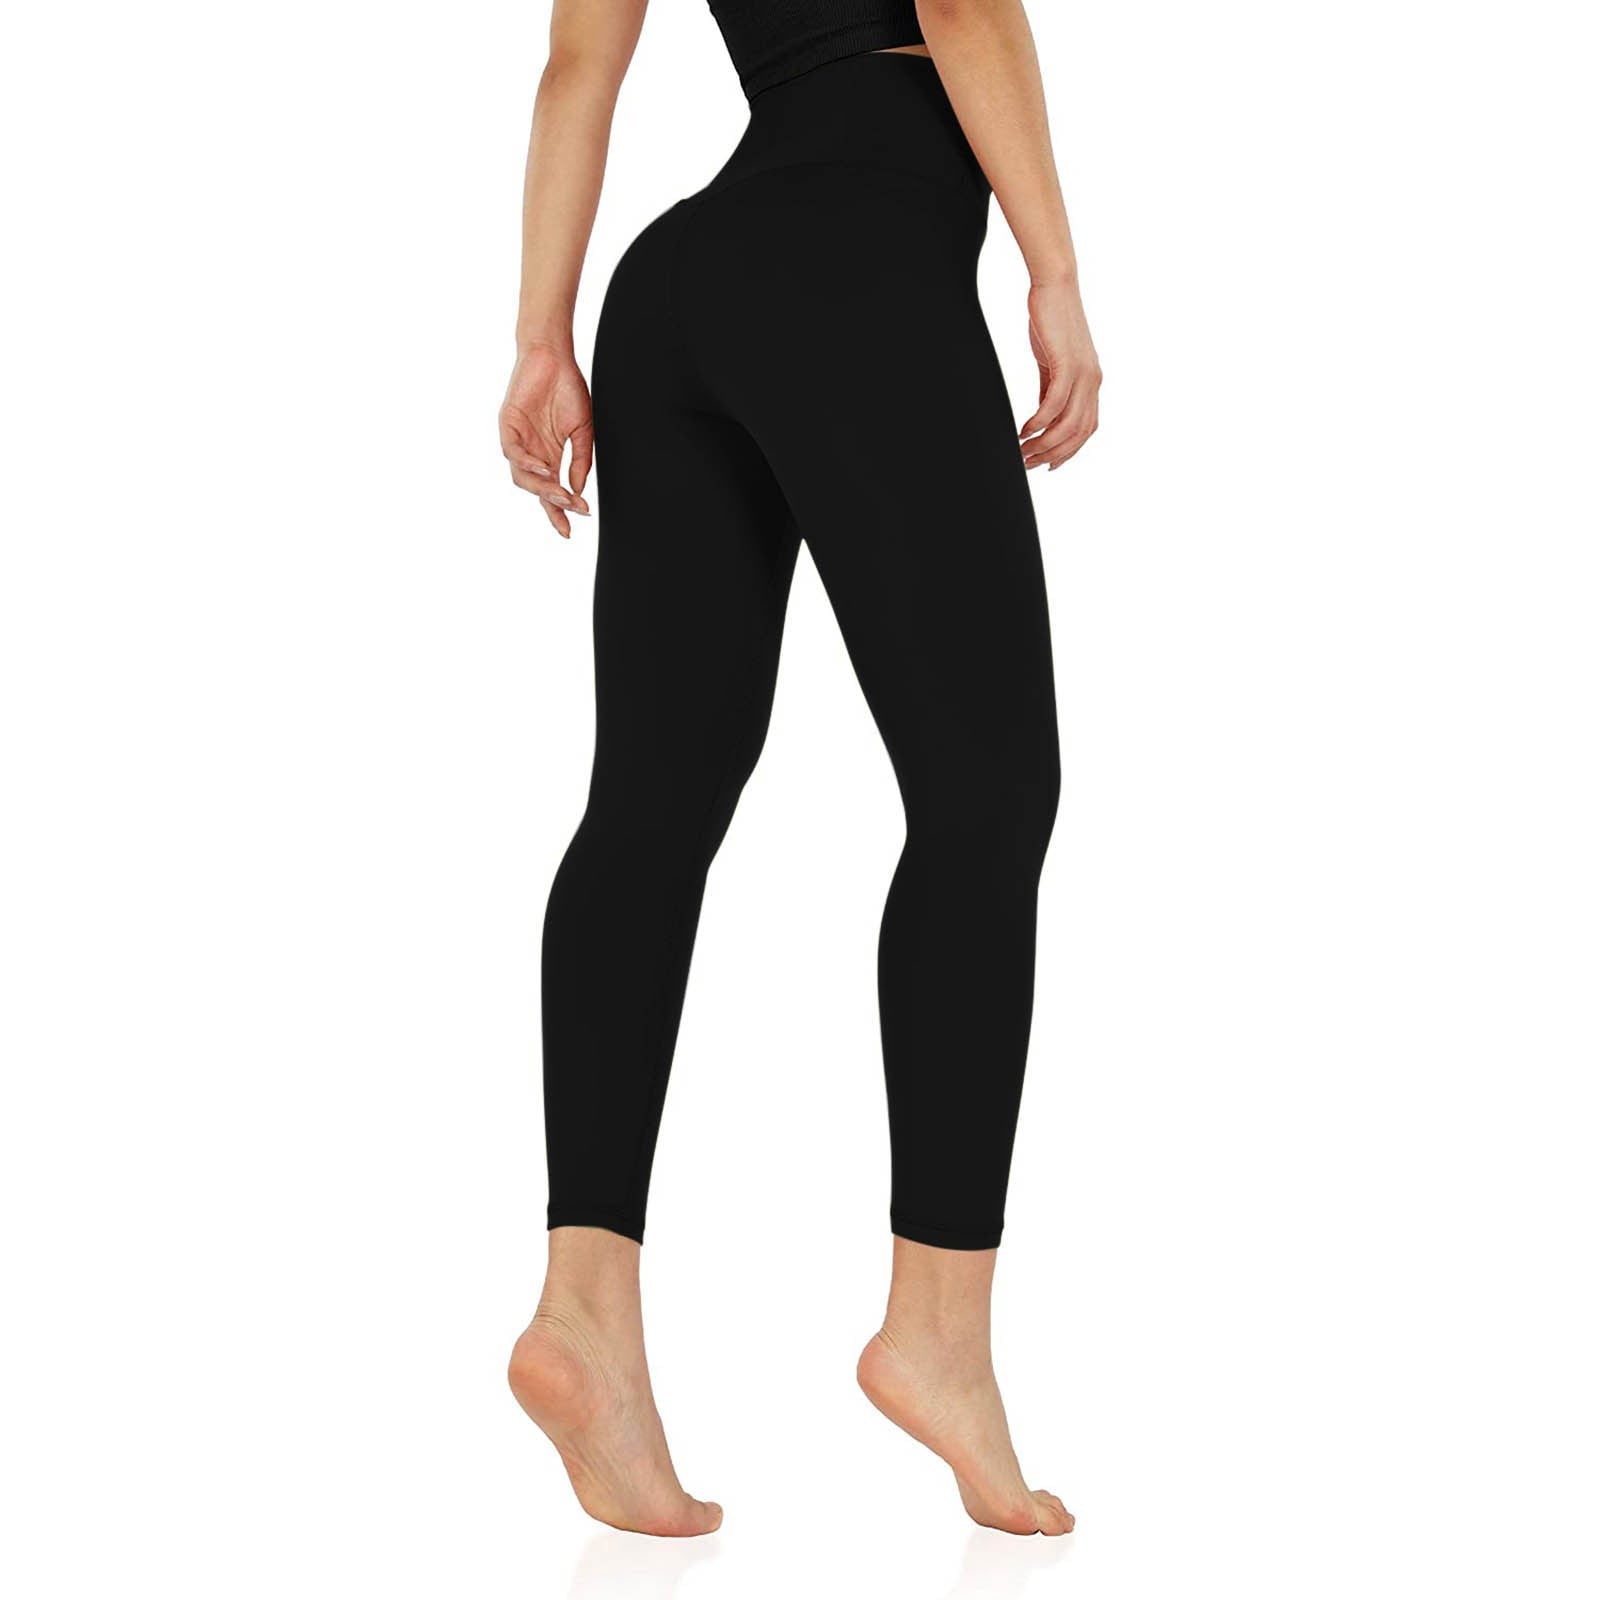 Aayomet Yoga Pants For Women Women's Black Flare Yoga Pants